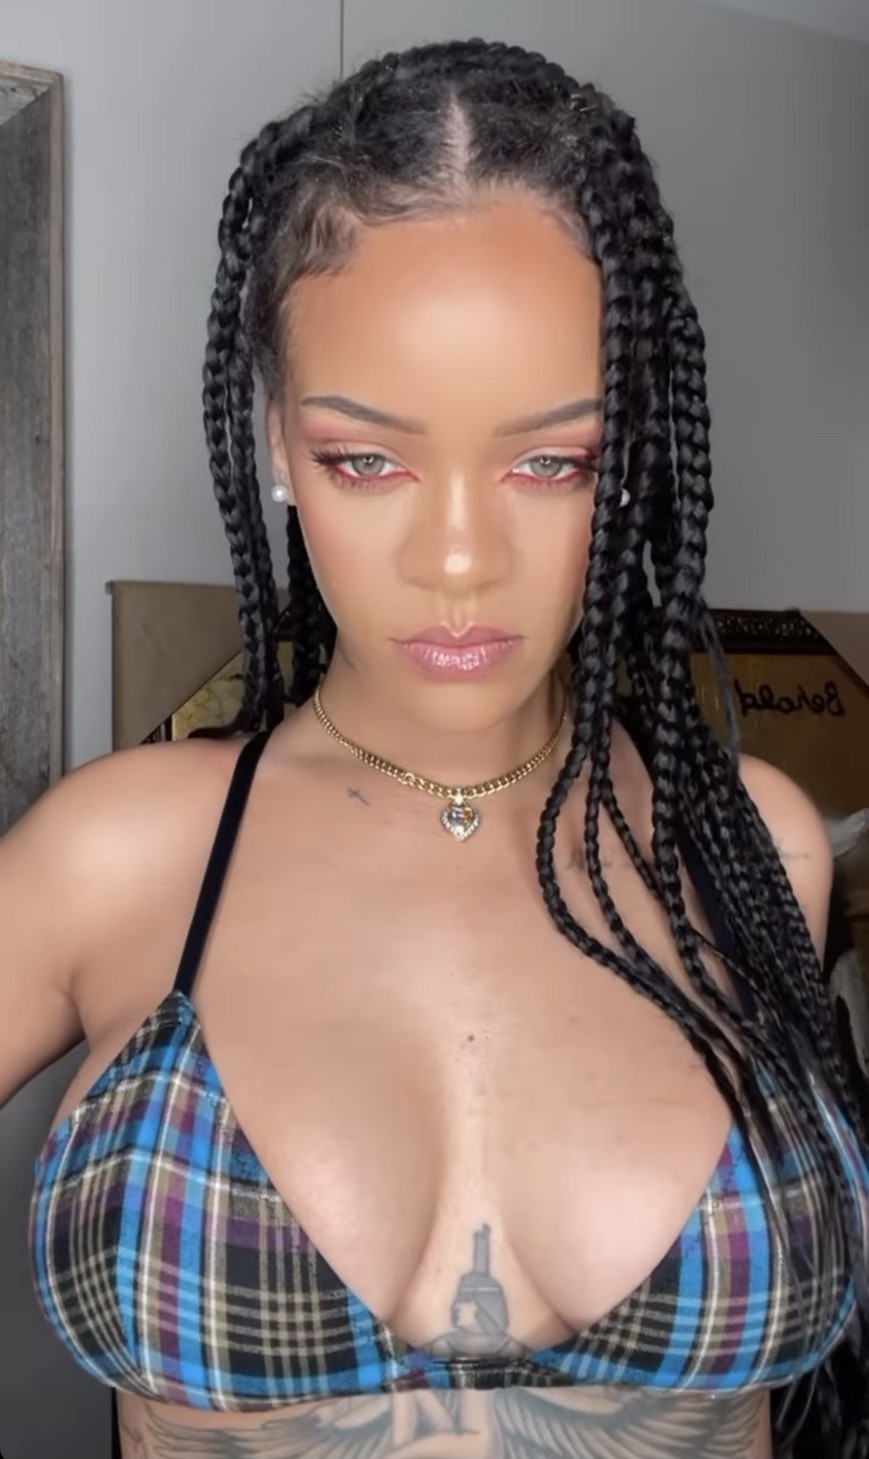 Rihanna Flaunts Her Big Tits TheFappening.Pro 2 - Rihanna Flaunts Her Big Tits (2 Photos)